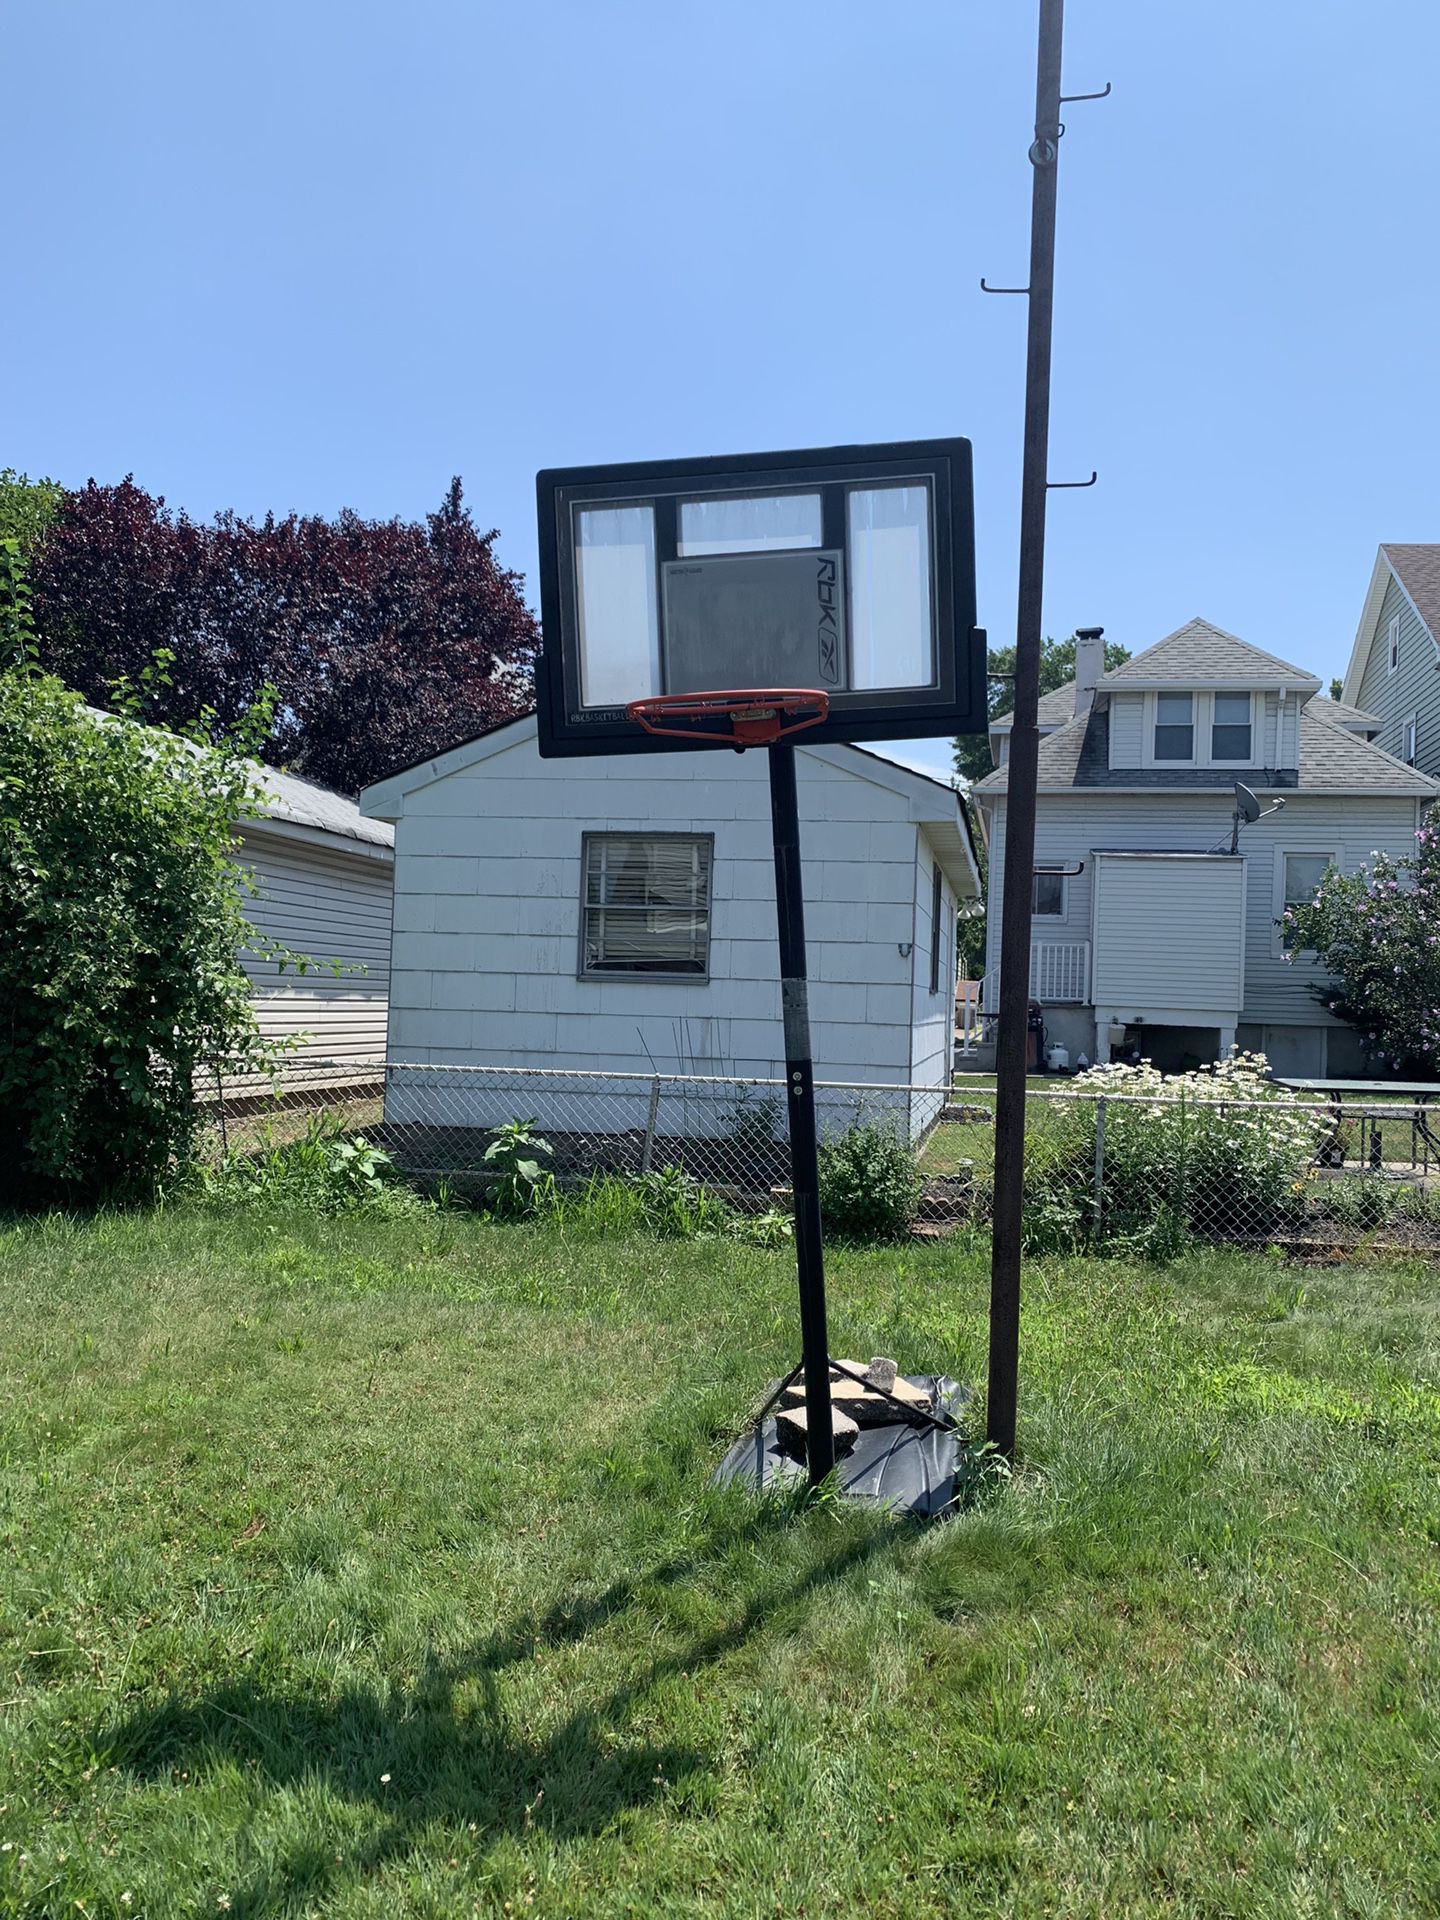 Rbk basketball hoop 7/21/19 come get it